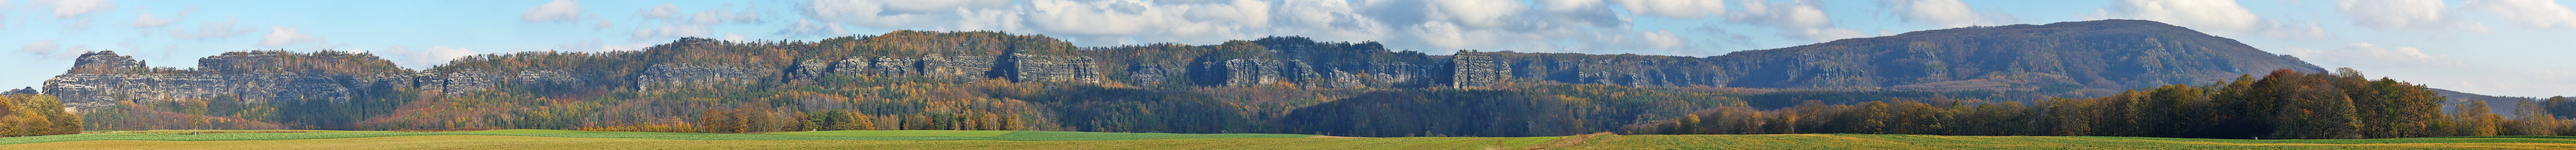 Schrammsteine mit allen Felsengruppen bis zum Großen Winterberg komplett...